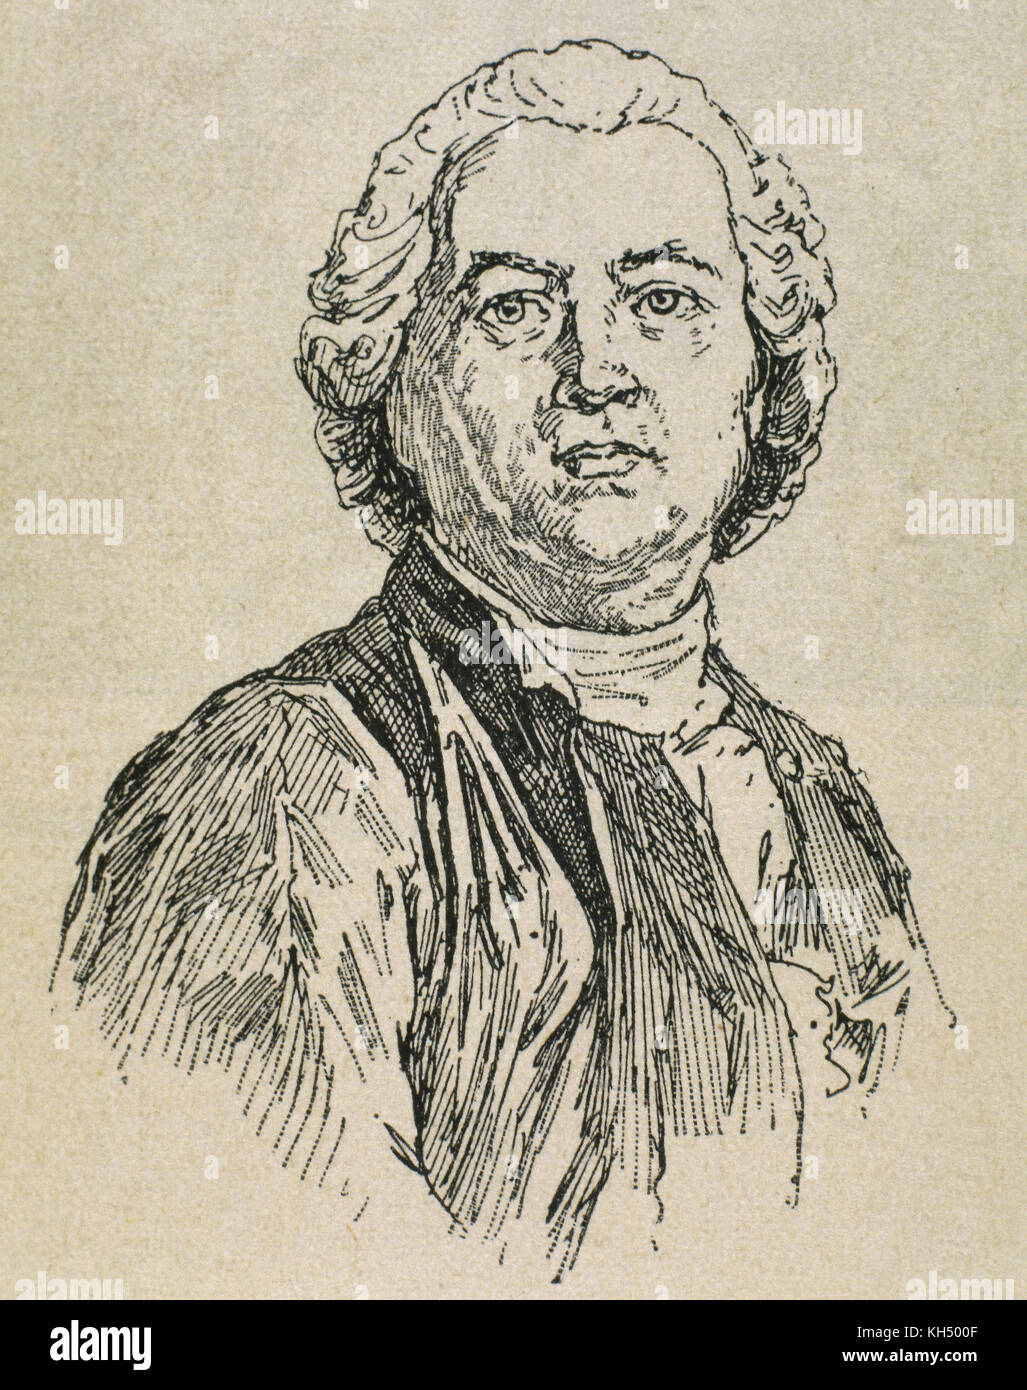 Christoph Willibald Gluck (1714-1787). Deutscher Komponist. Porträt. Gravur, 1917. Stockfoto